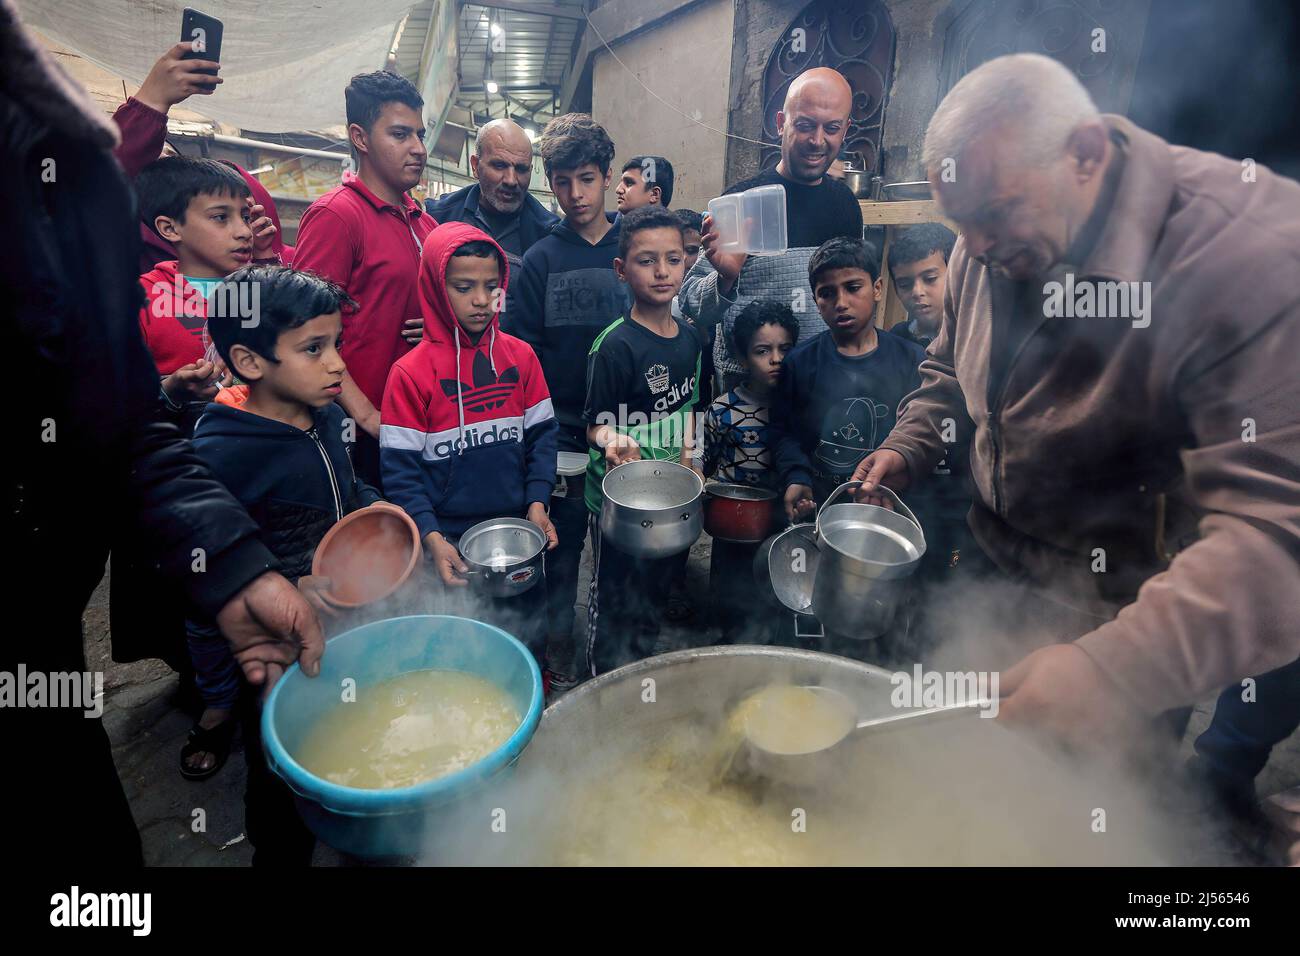 Les Palestiniens reçoivent de la soupe gratuite pendant le ramadan dans le quartier de Shejaiya, dans la ville de Gaza. Les musulmans du monde entier célèbrent le Saint mois du Ramadan en priant pendant la nuit et en s'abstenant de manger et de boire entre le lever et le coucher du soleil. Ramadan est le neuvième mois du calendrier islamique et on croit que le premier verset du Coran a été révélé au cours de ses dix dernières nuits. Banque D'Images